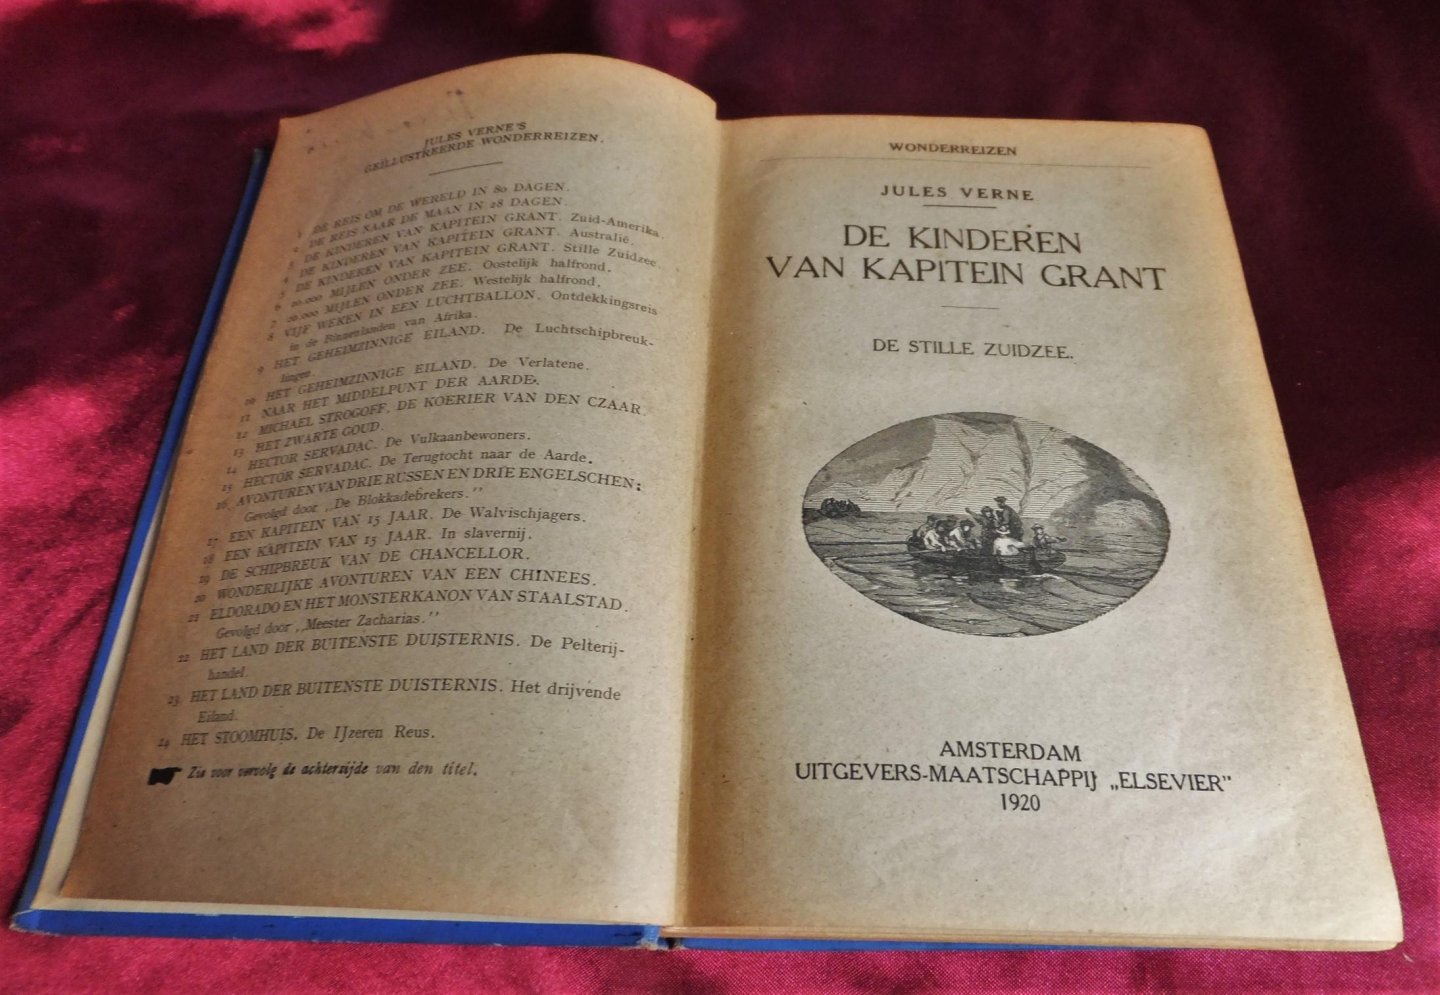 Verne, Jules - Wonderreizen: De kinderen van Kapitein Grant - De stille zuidzee